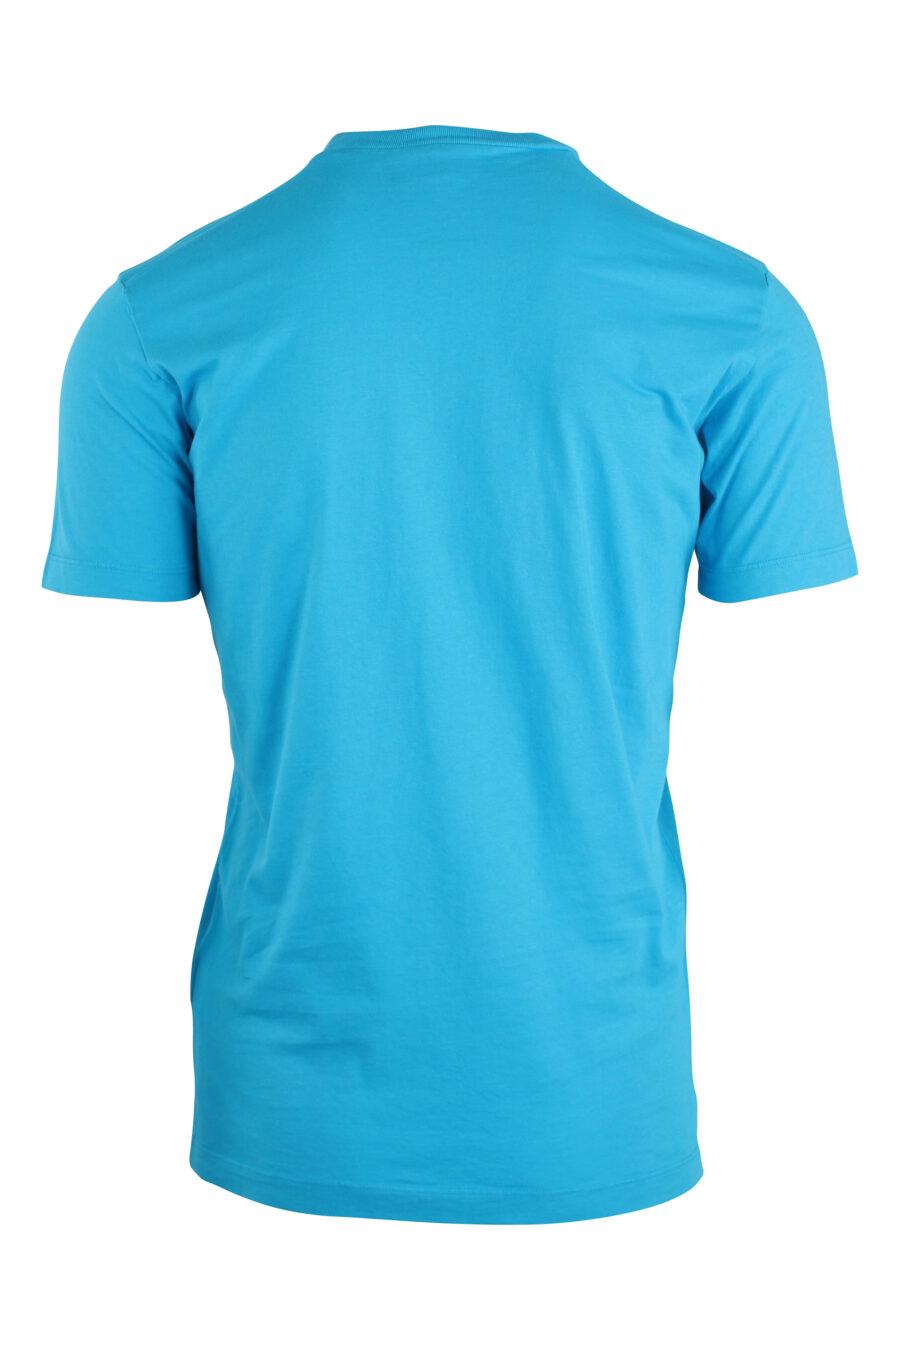 T-shirt azul clara com maxilogue amarelo - IMG 8922